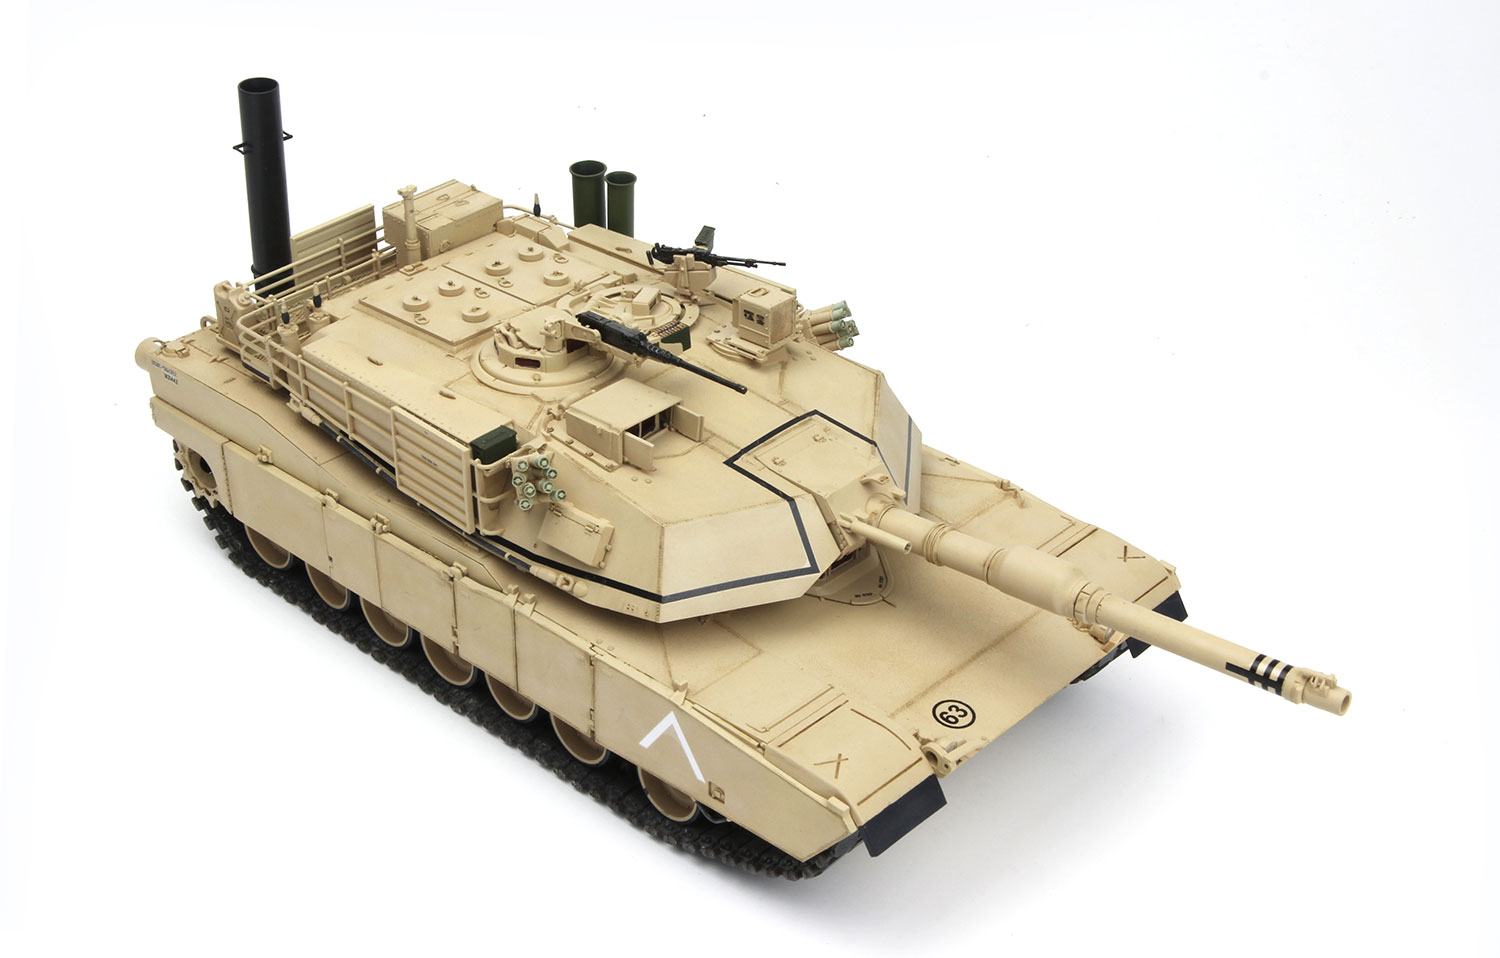 Сколько стоит абрамс в рублях цена. M1a1 Abrams Tusk - Meng model TS-032 1/35. Abrams m1a1 Meng TS-032. Менг Абрамс танк 1/35. Meng 1/35.